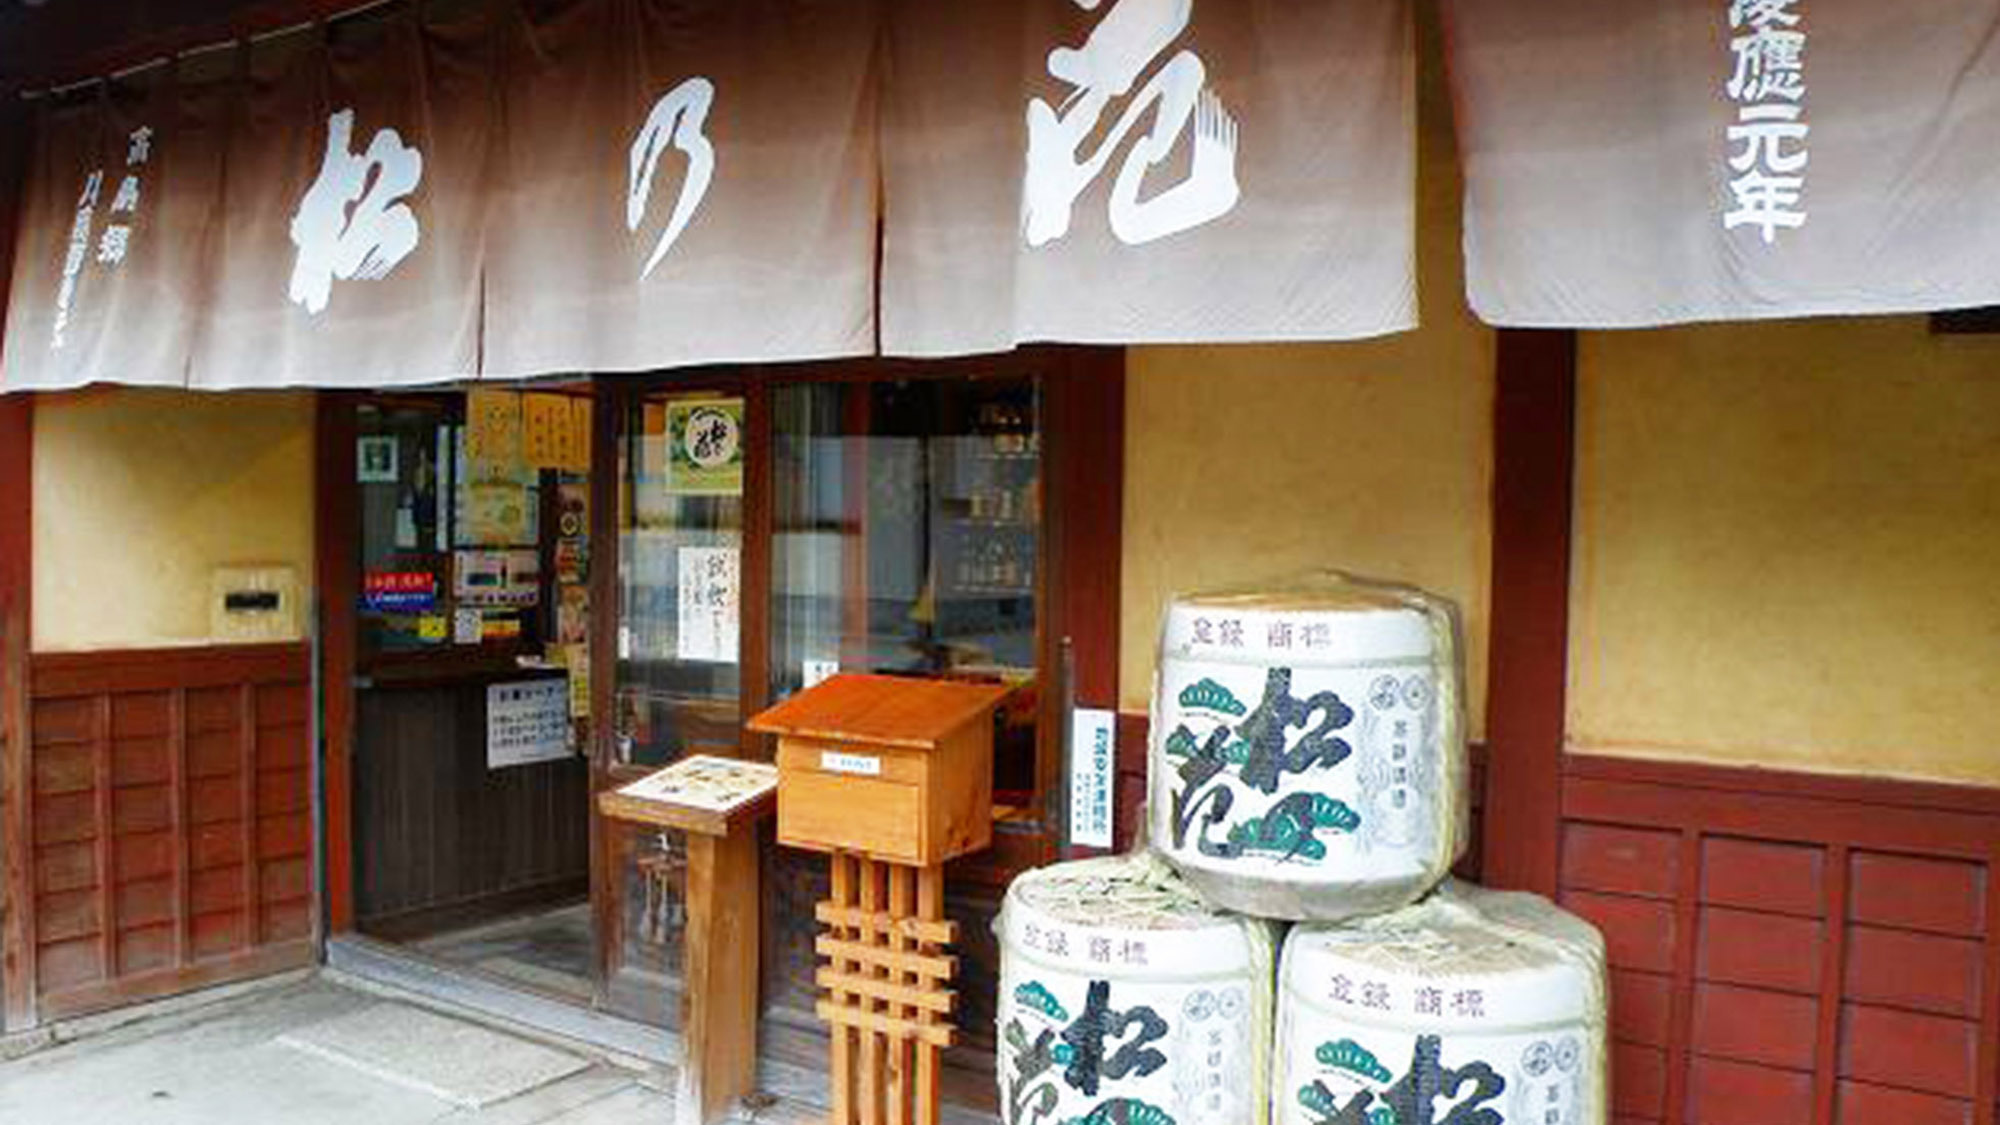 ・「松の花」で有名な川島酒造です